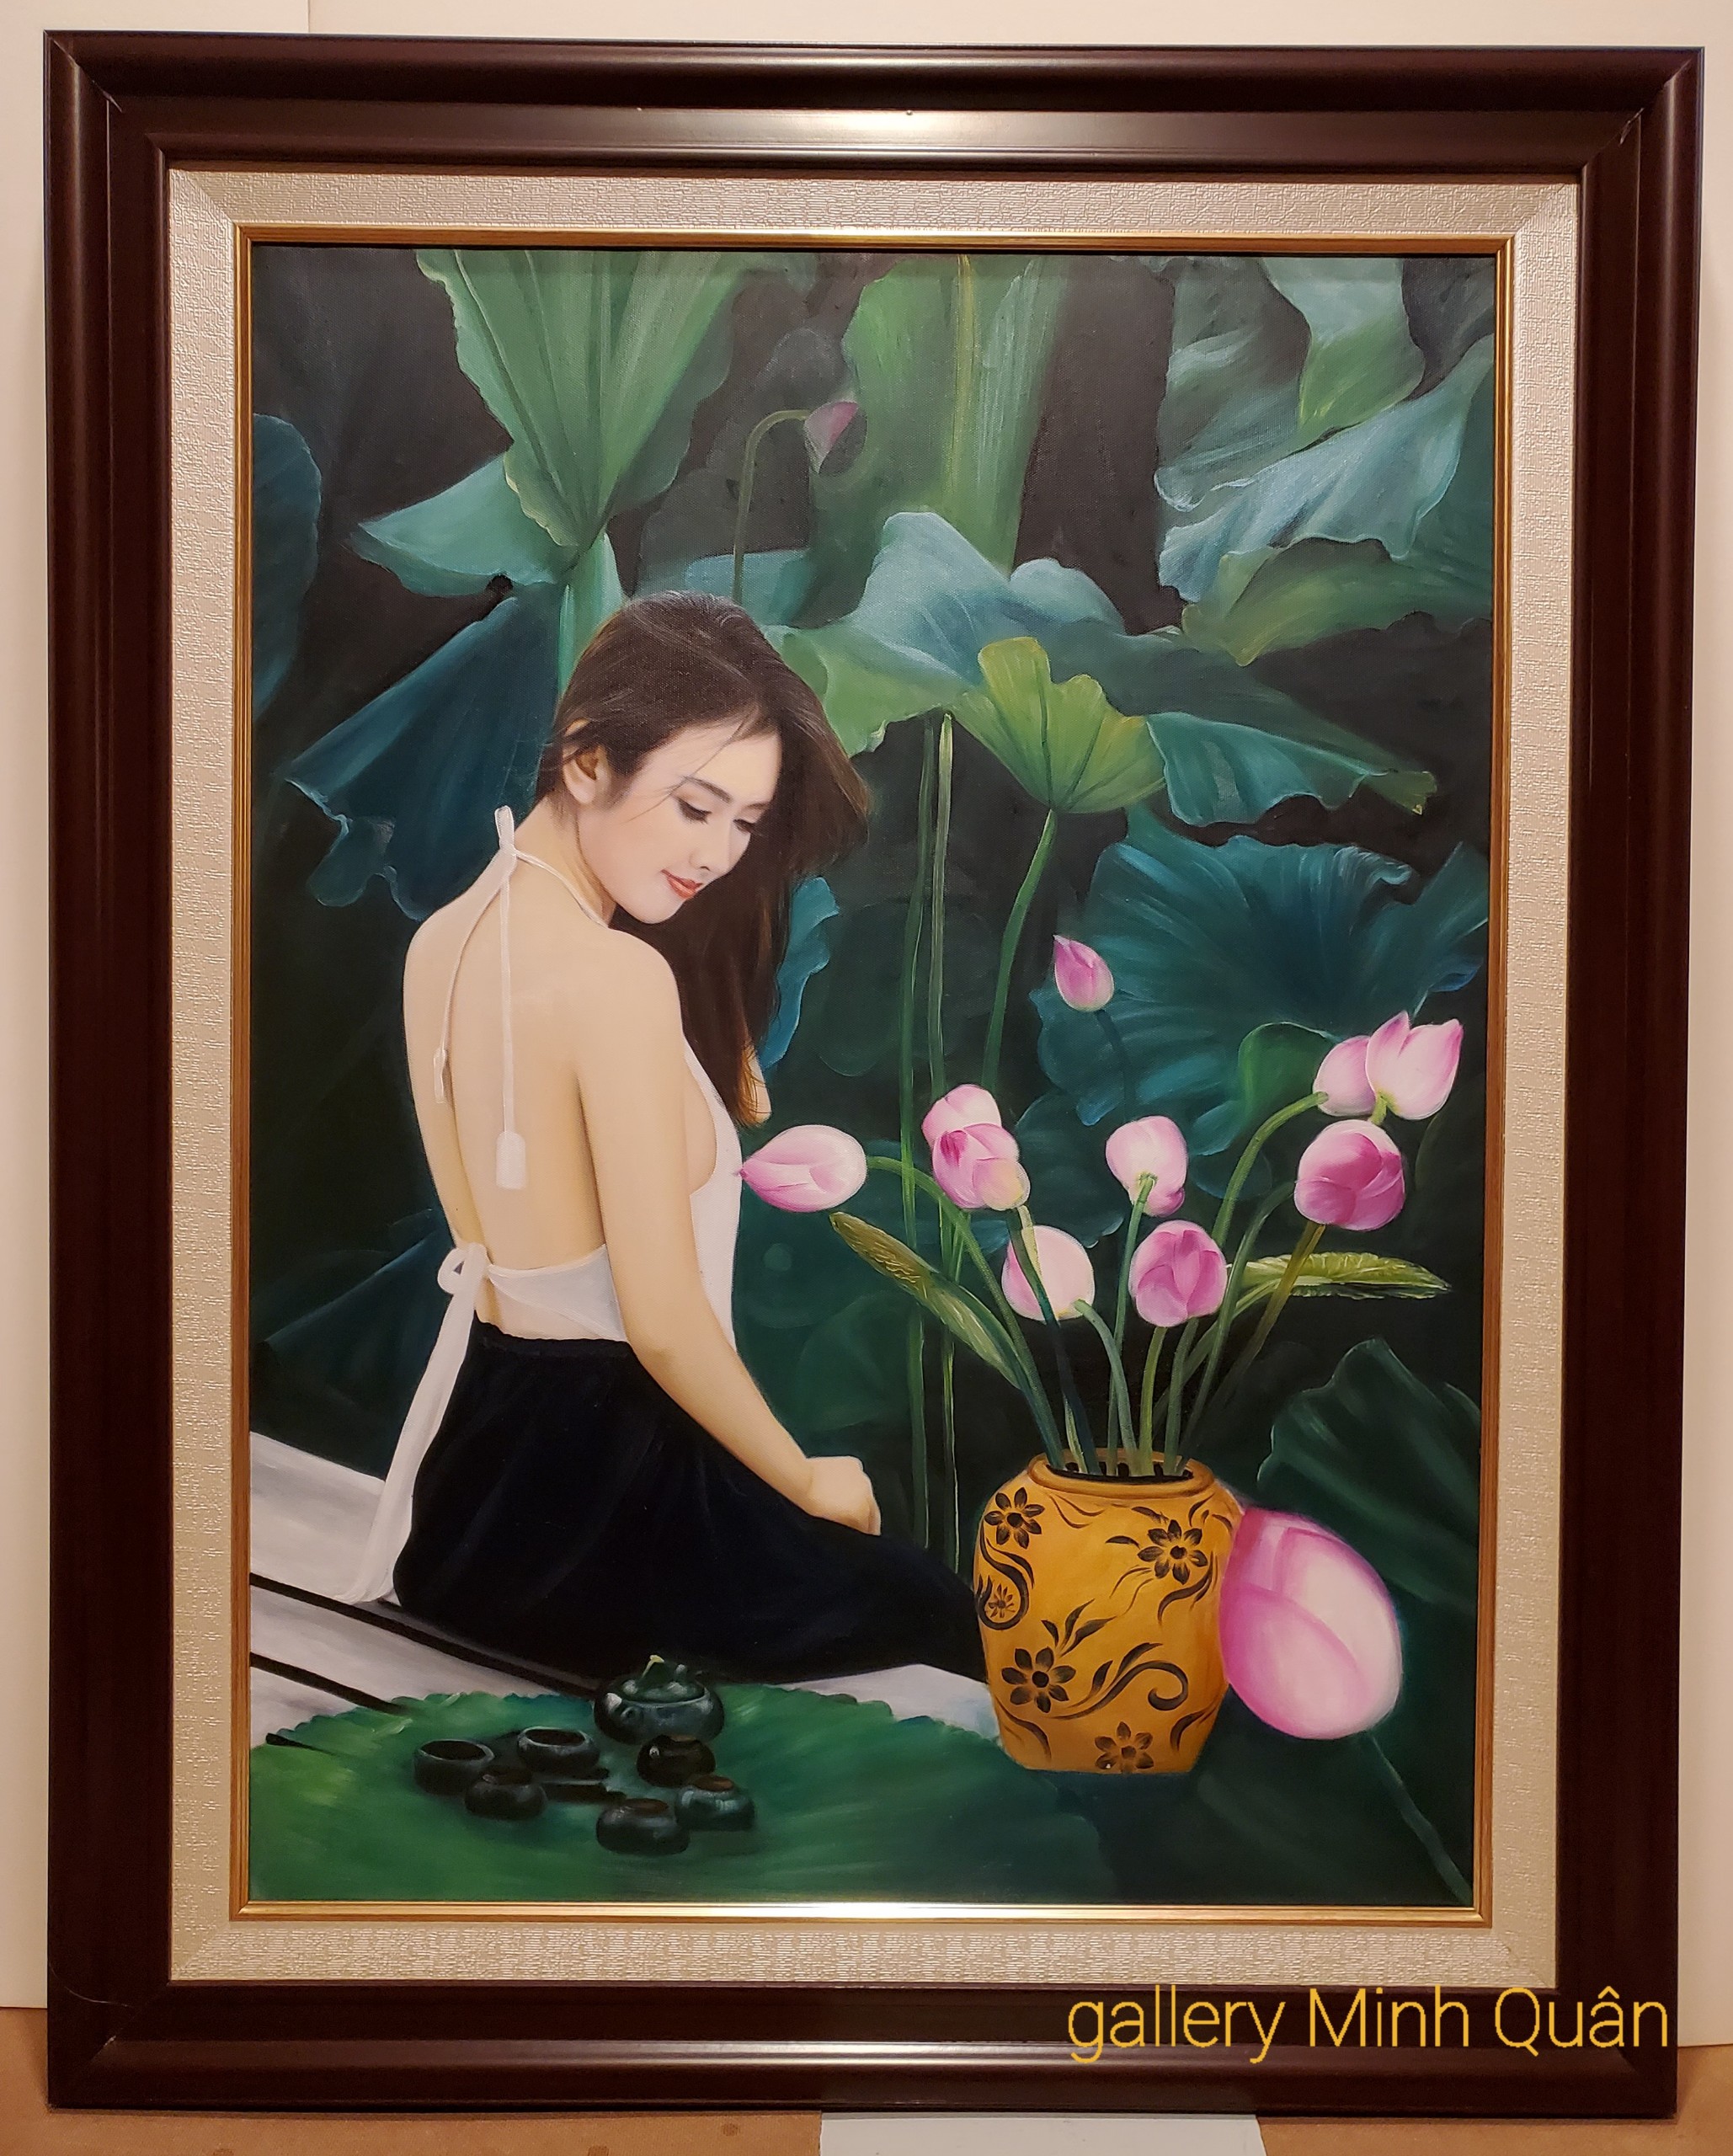 Tranh vẽ sơn dầu nghệ thuật " Thiếu nữ bên bình hoa sen"